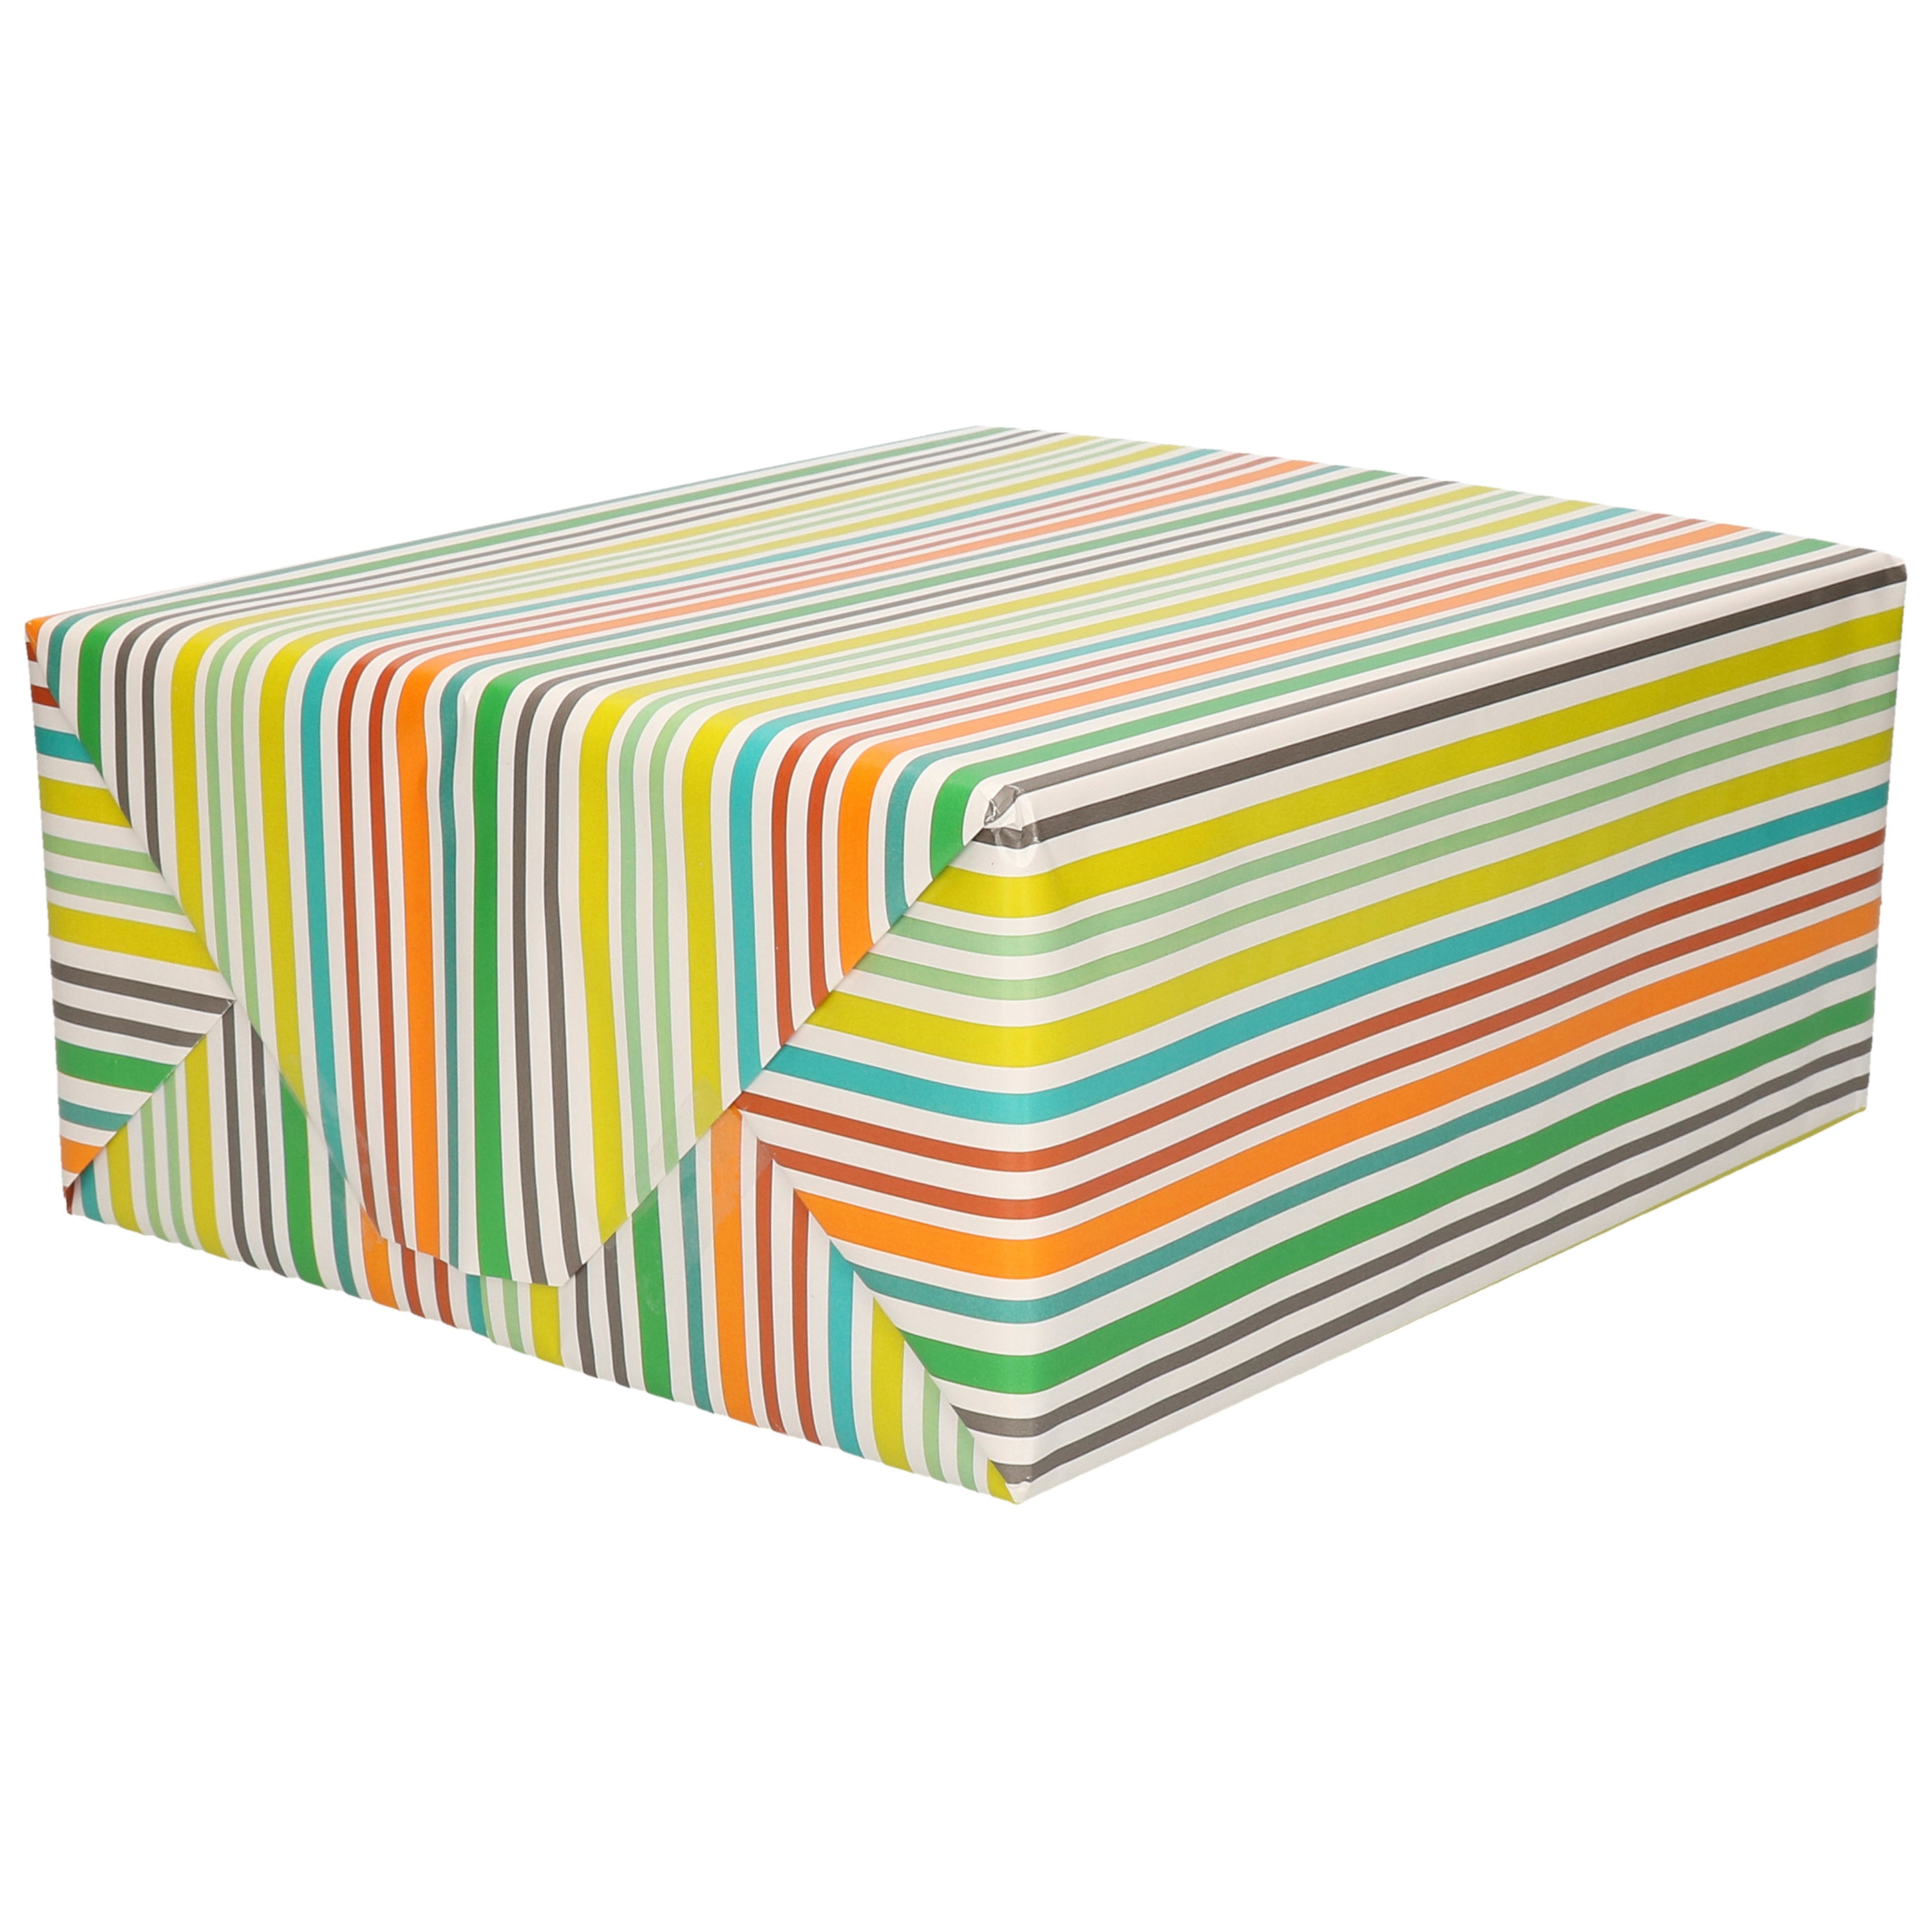 1x Inpakpapier/cadeaupapier wit met gekleurde strepen motief 200 x 70 cm rol